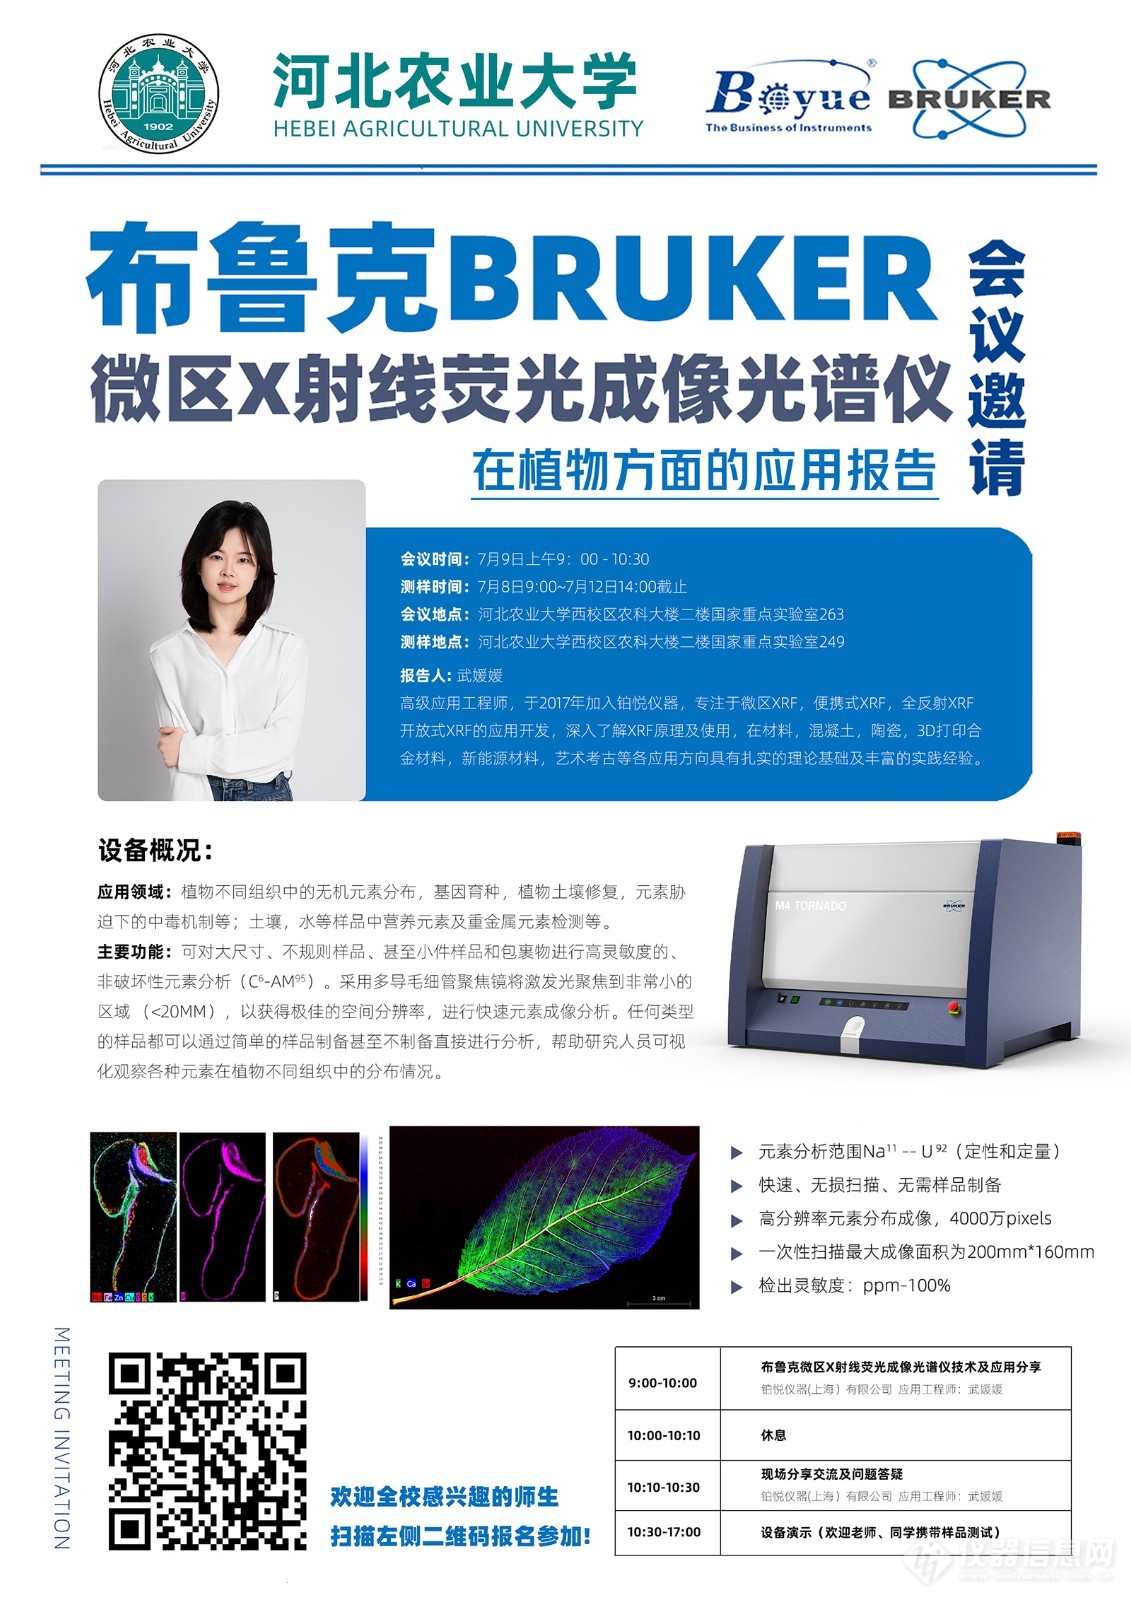 会议邀请 | 河北农业大学布鲁克微区X射线荧光成像光谱仪技术及应用分享